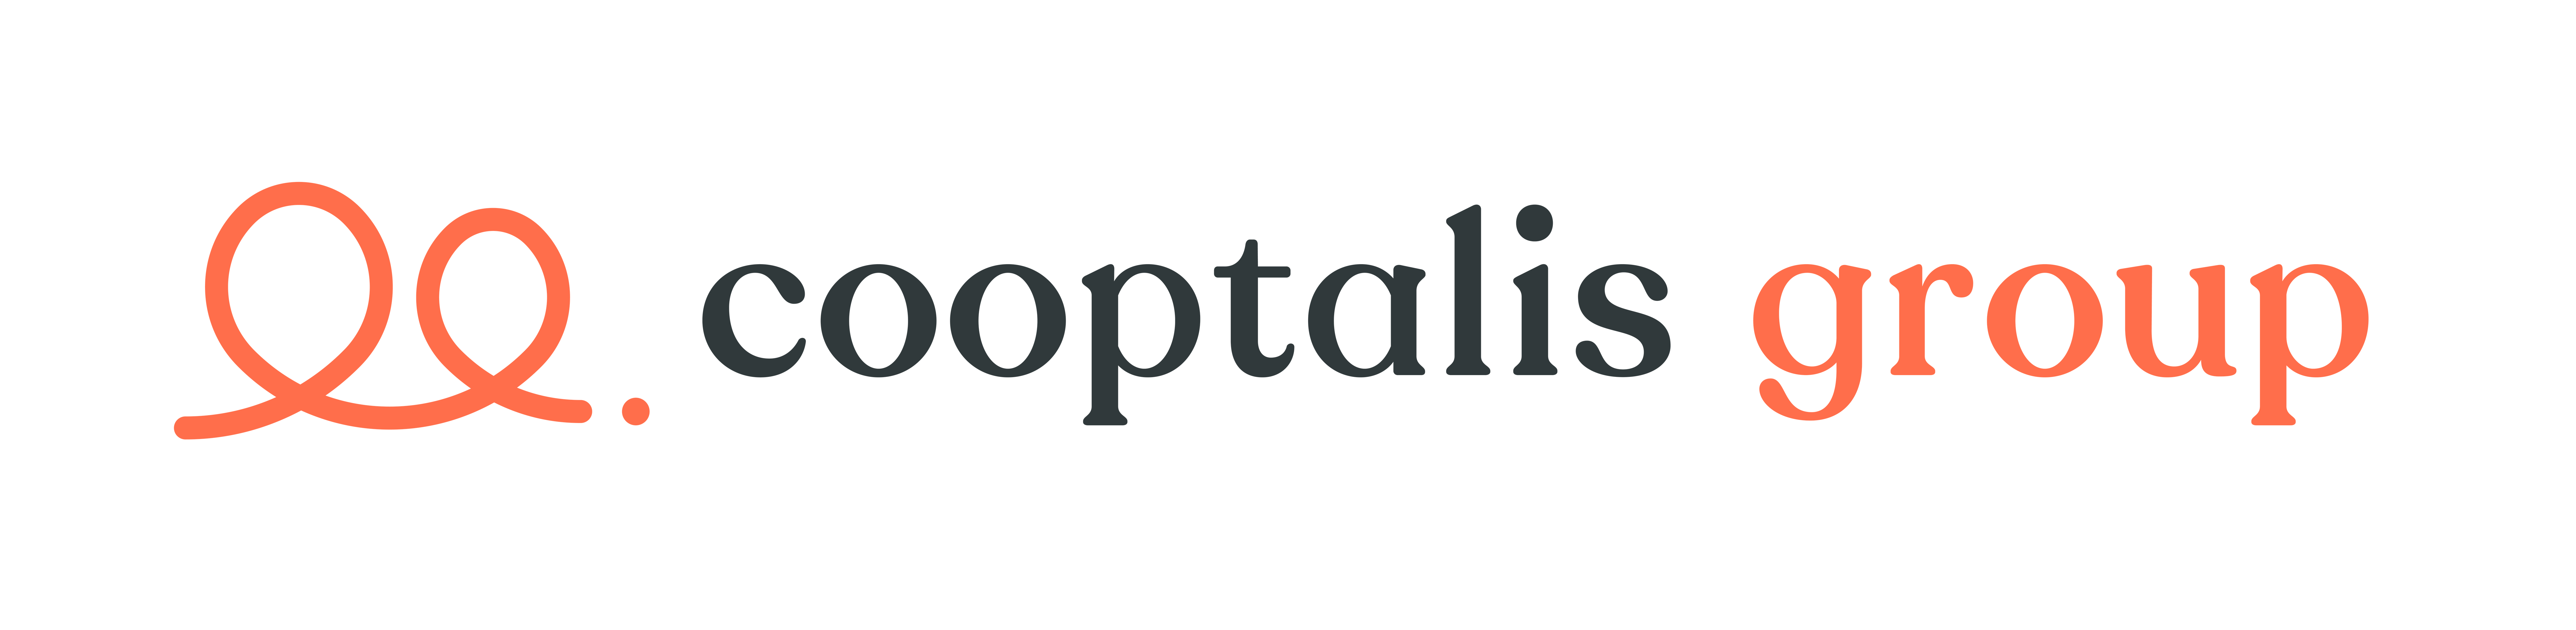 Cooptalis Group is hiring on Meet.jobs!